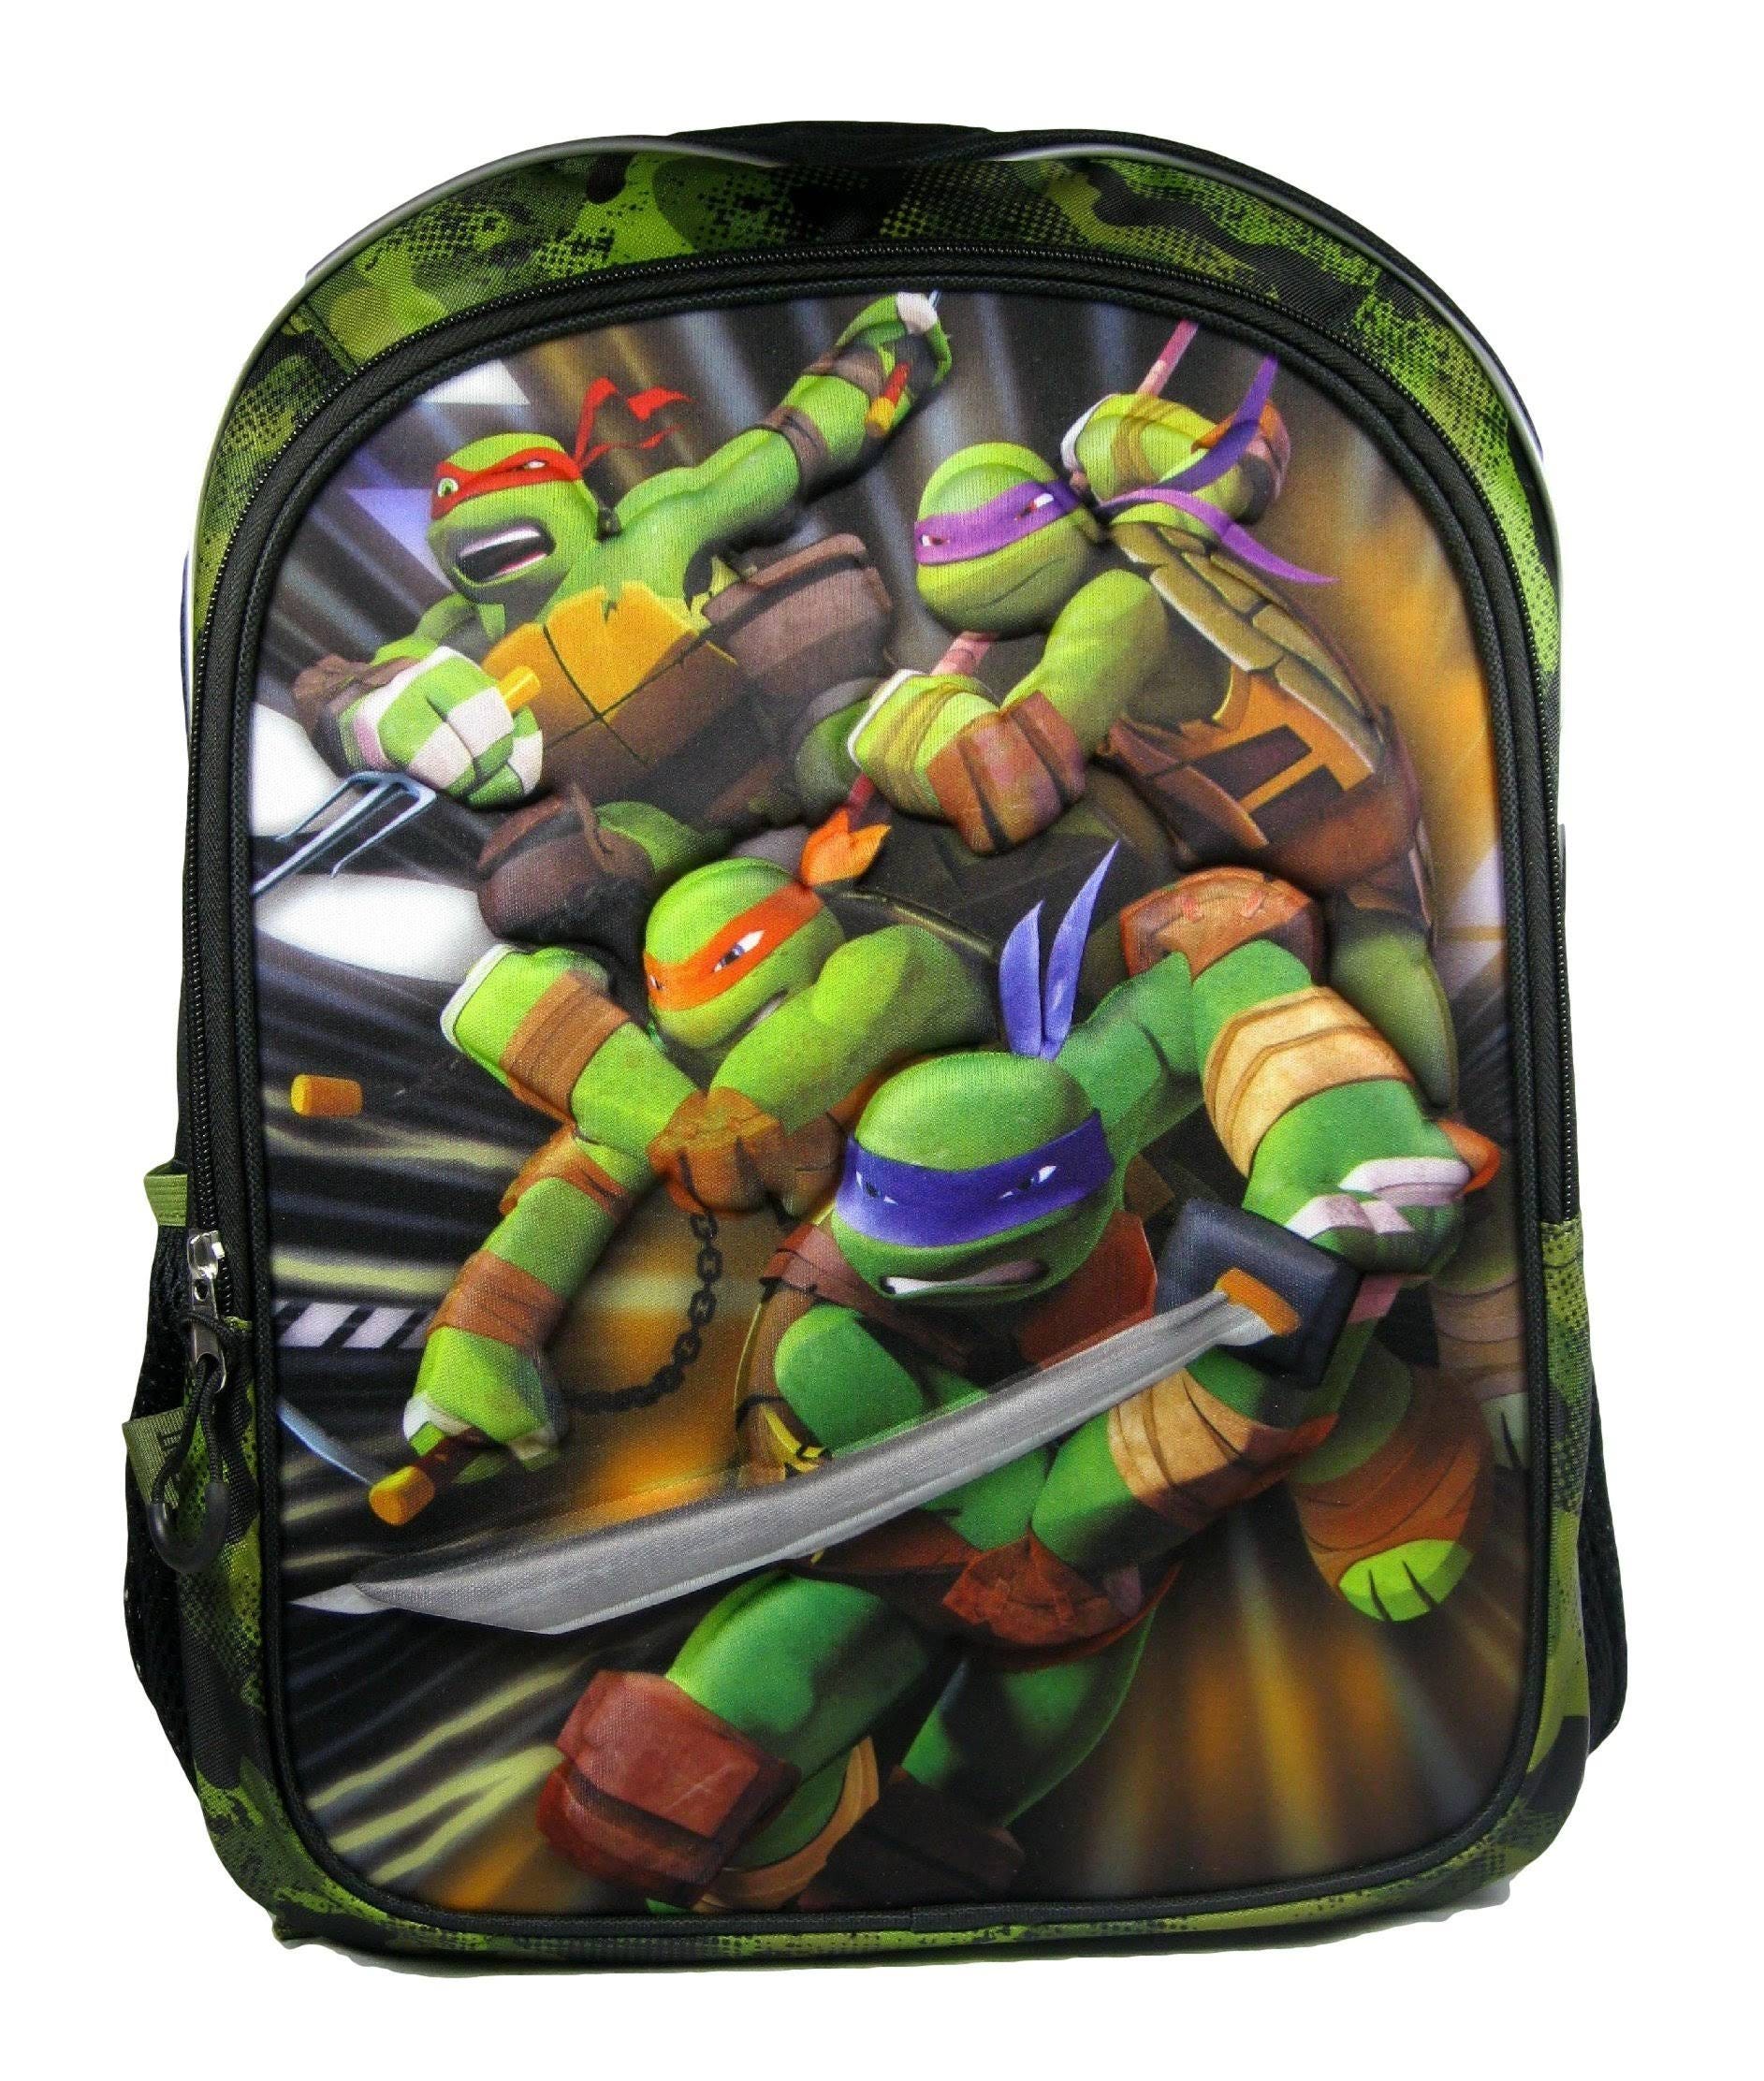 Nickelodeon Teenage Mutant Ninja Turtles Backpack for School | Image